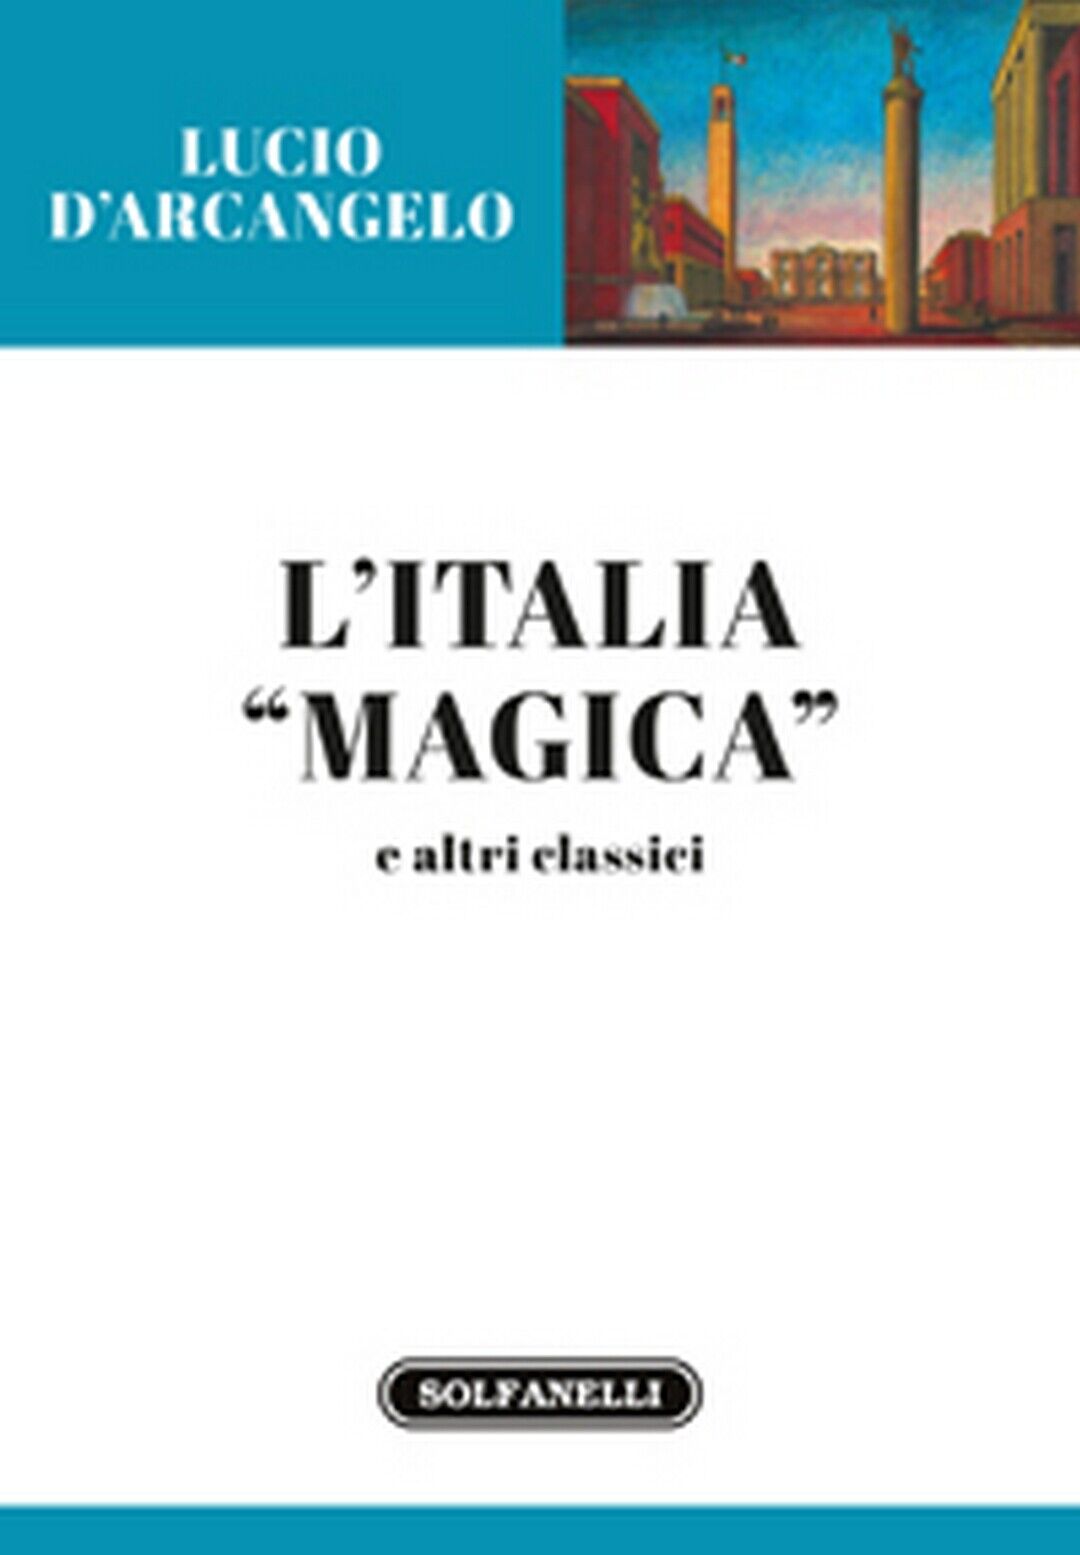 L'ITALIA MAGICA e altri classici  di Lucio d'Arcangelo,  Solfanelli Edizioni libro usato